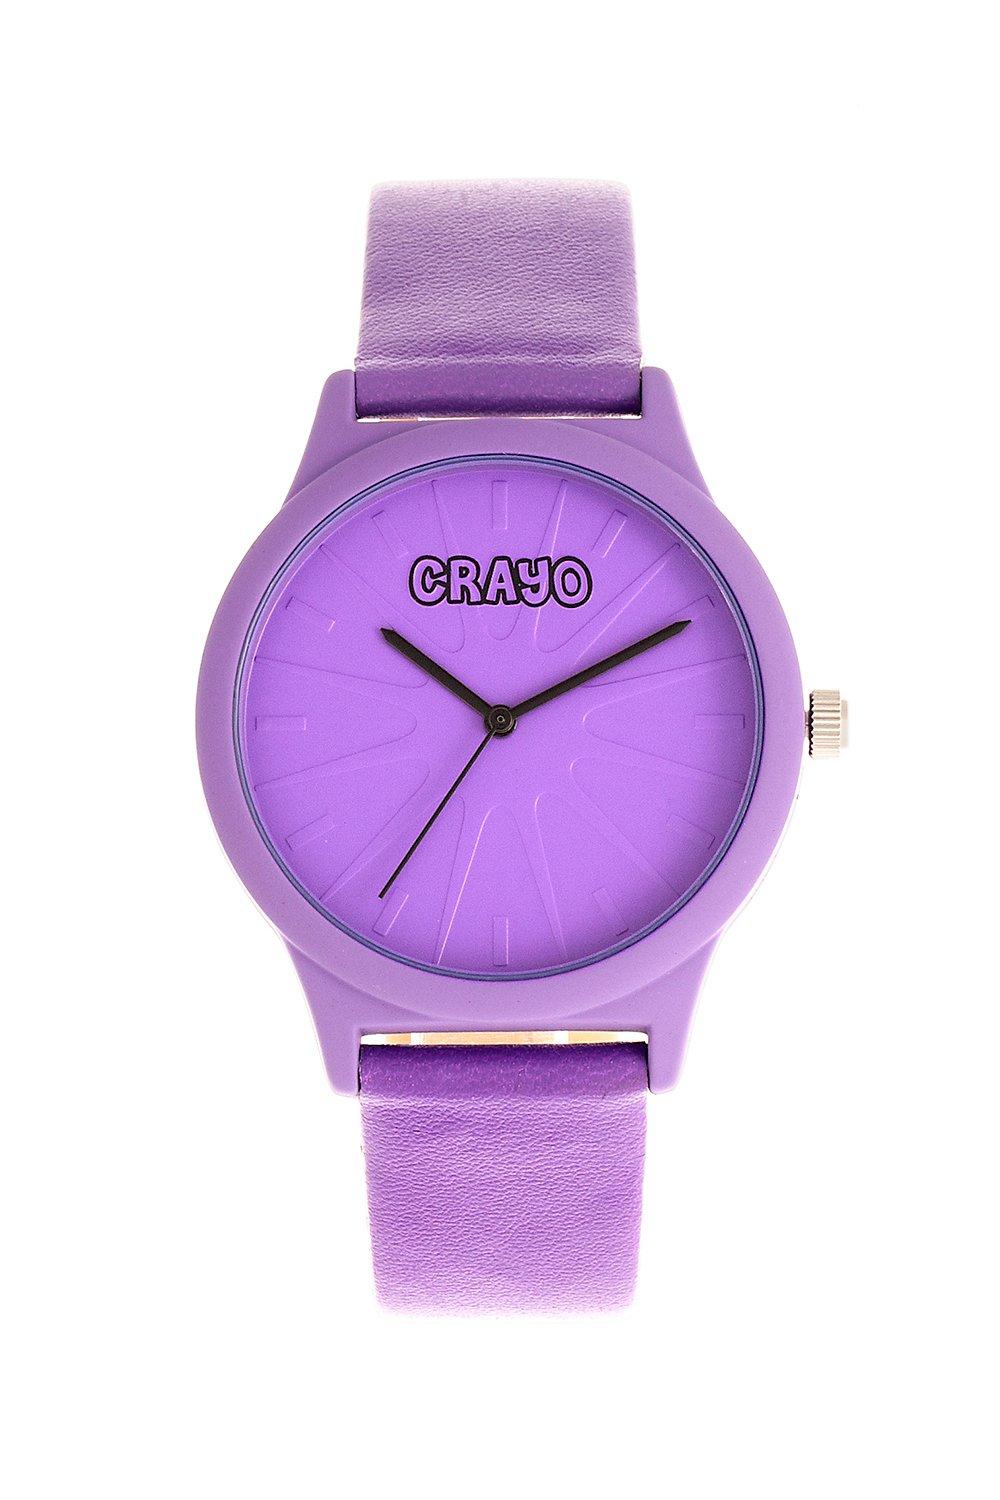 Часы Сплат унисекс Crayo, фиолетовый